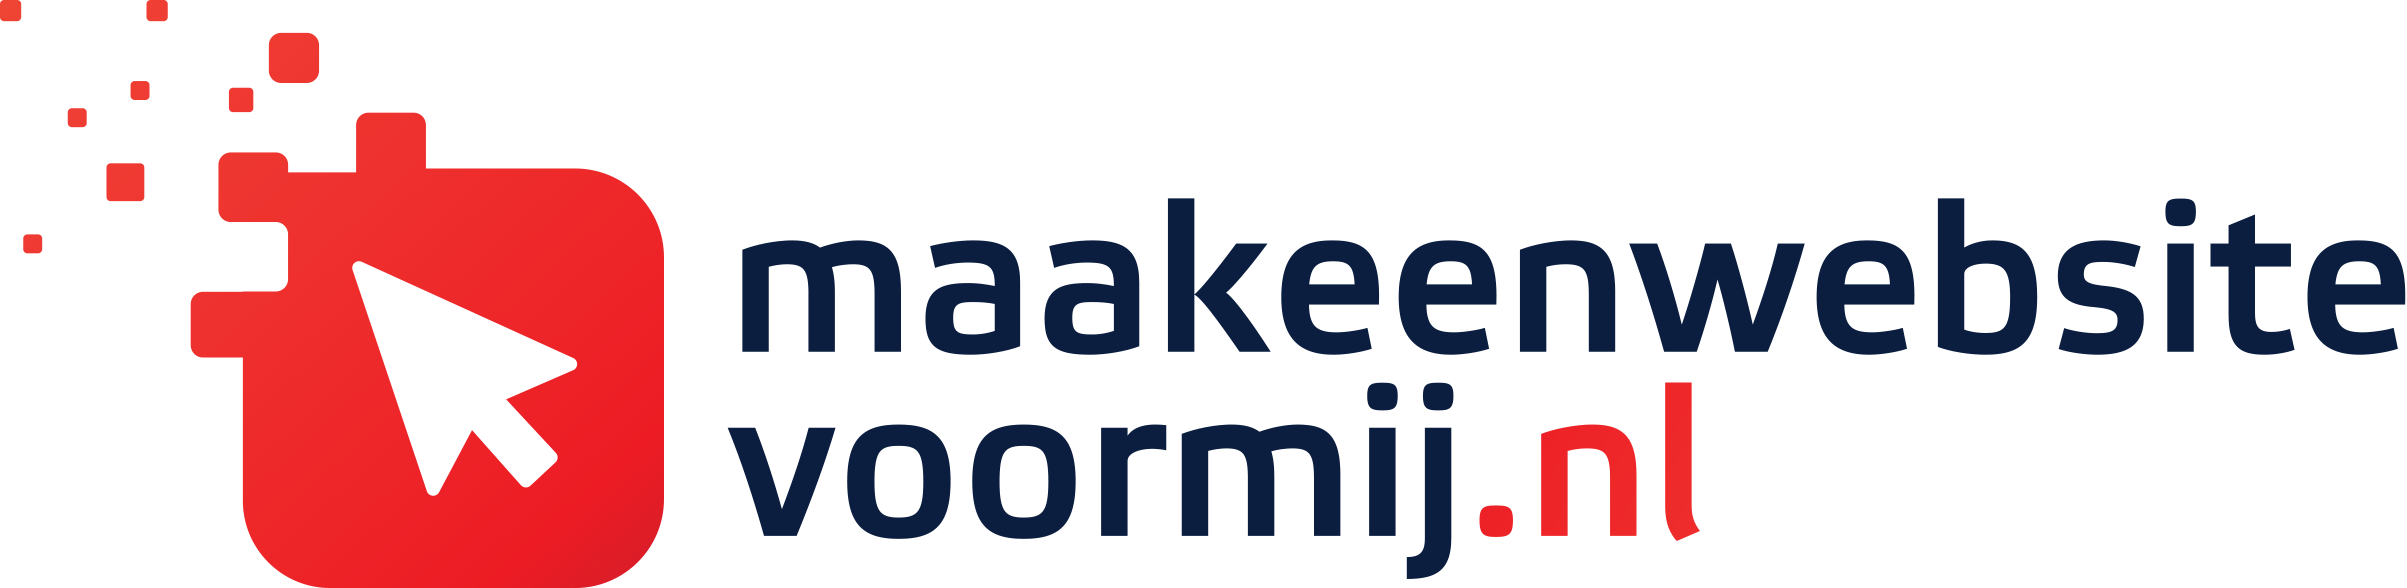 maakeenwebsitevoormij.nl_logo